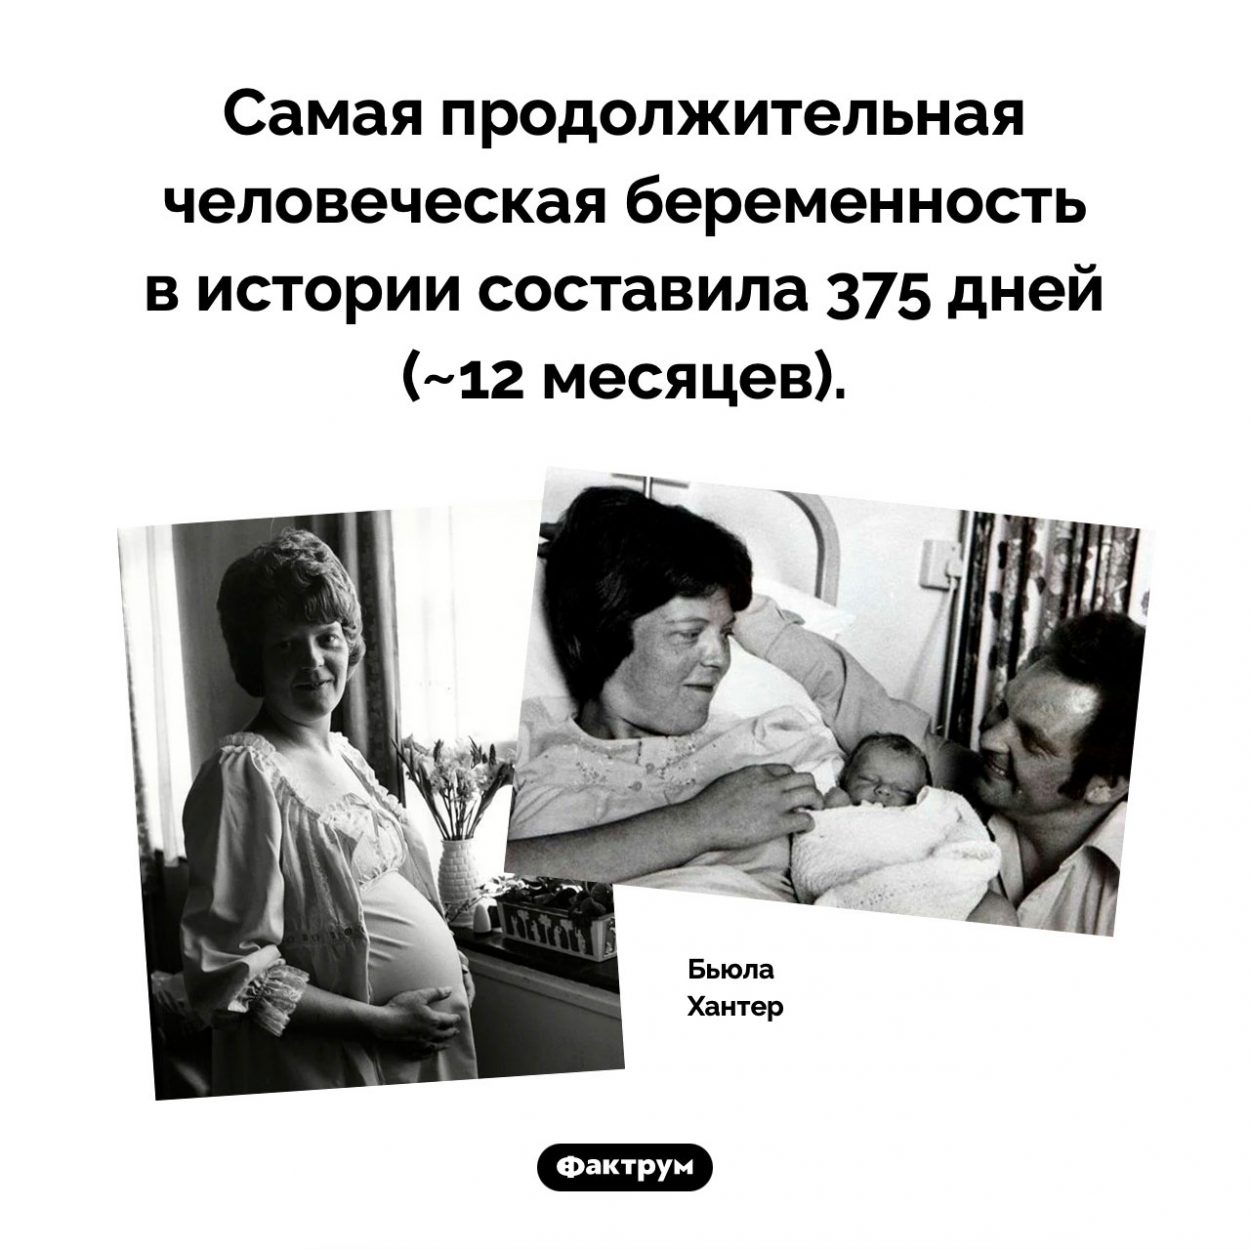 Самая продолжительная беременность. Самая продолжительная человеческая беременность в истории составила 375 дней (~12 месяцев).